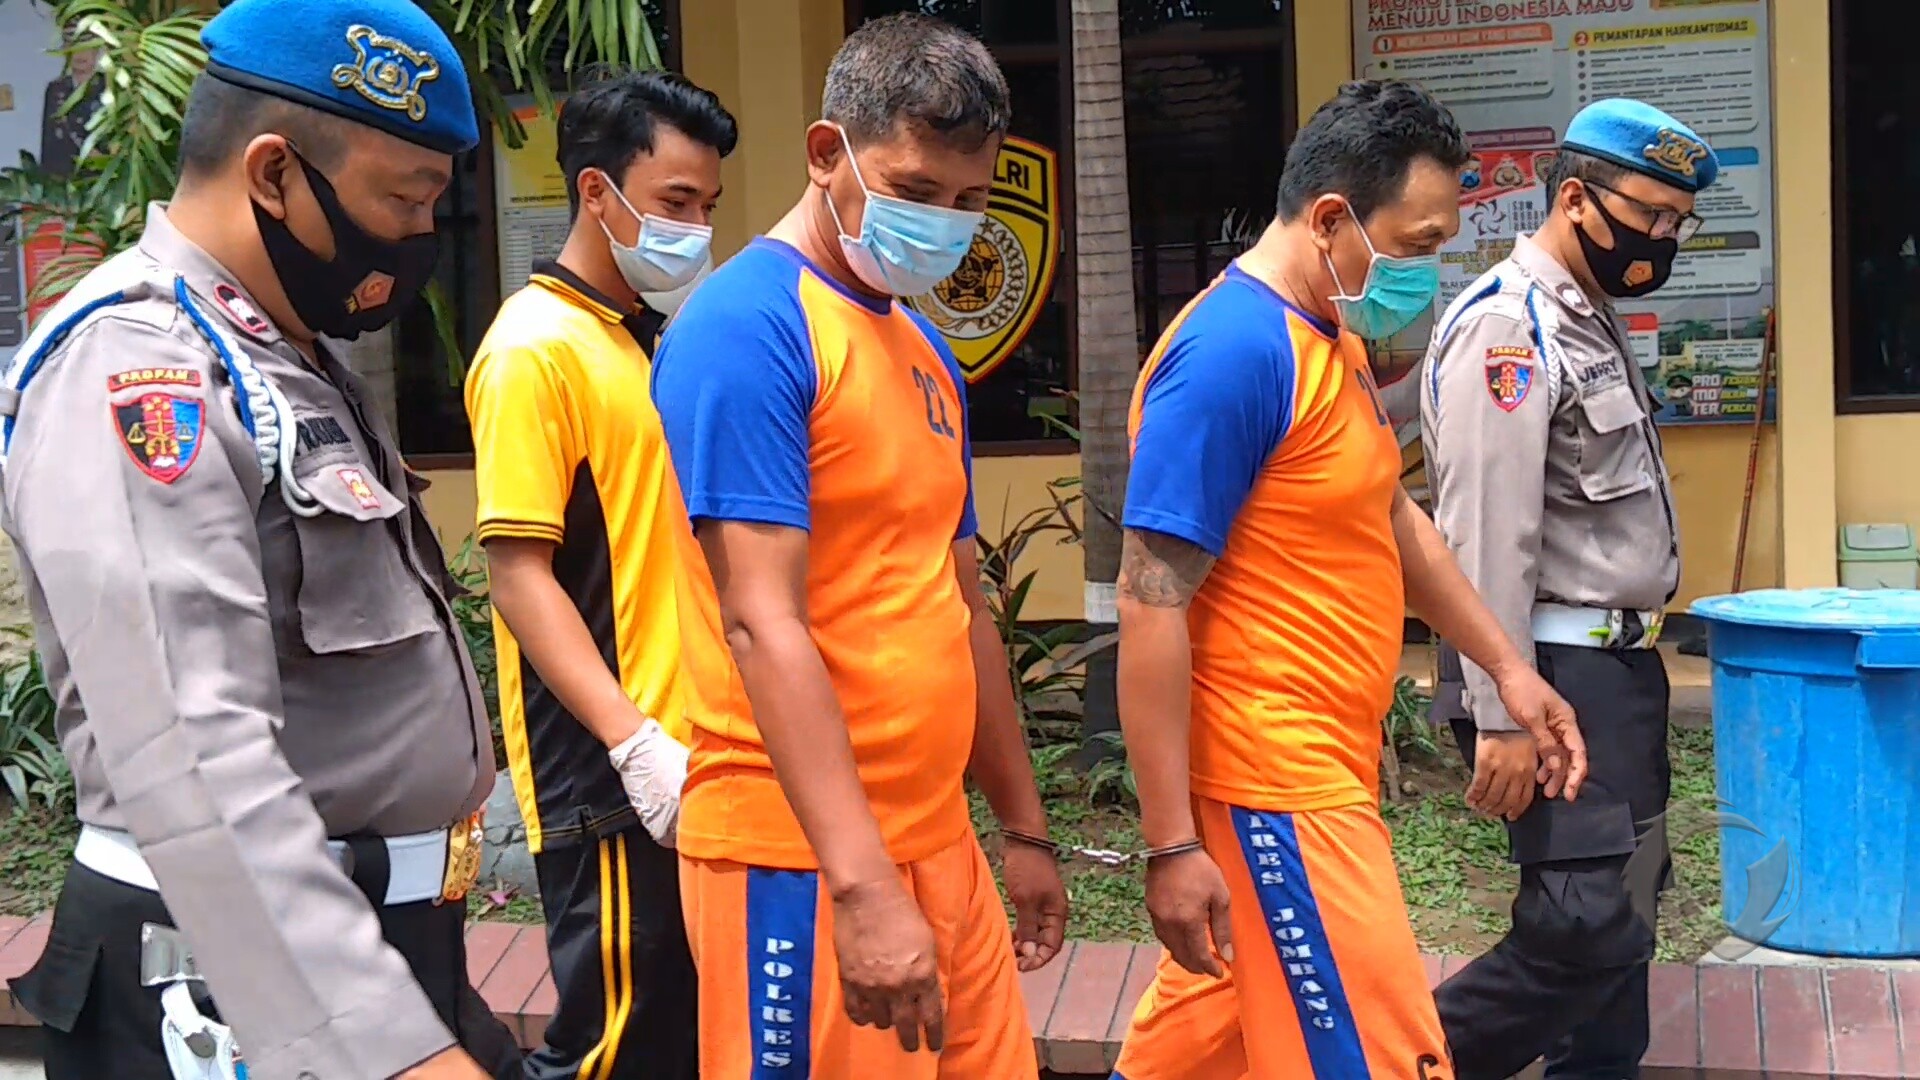 Pelaku jambret nasabah bank di Jombang saat dikeler polisi.